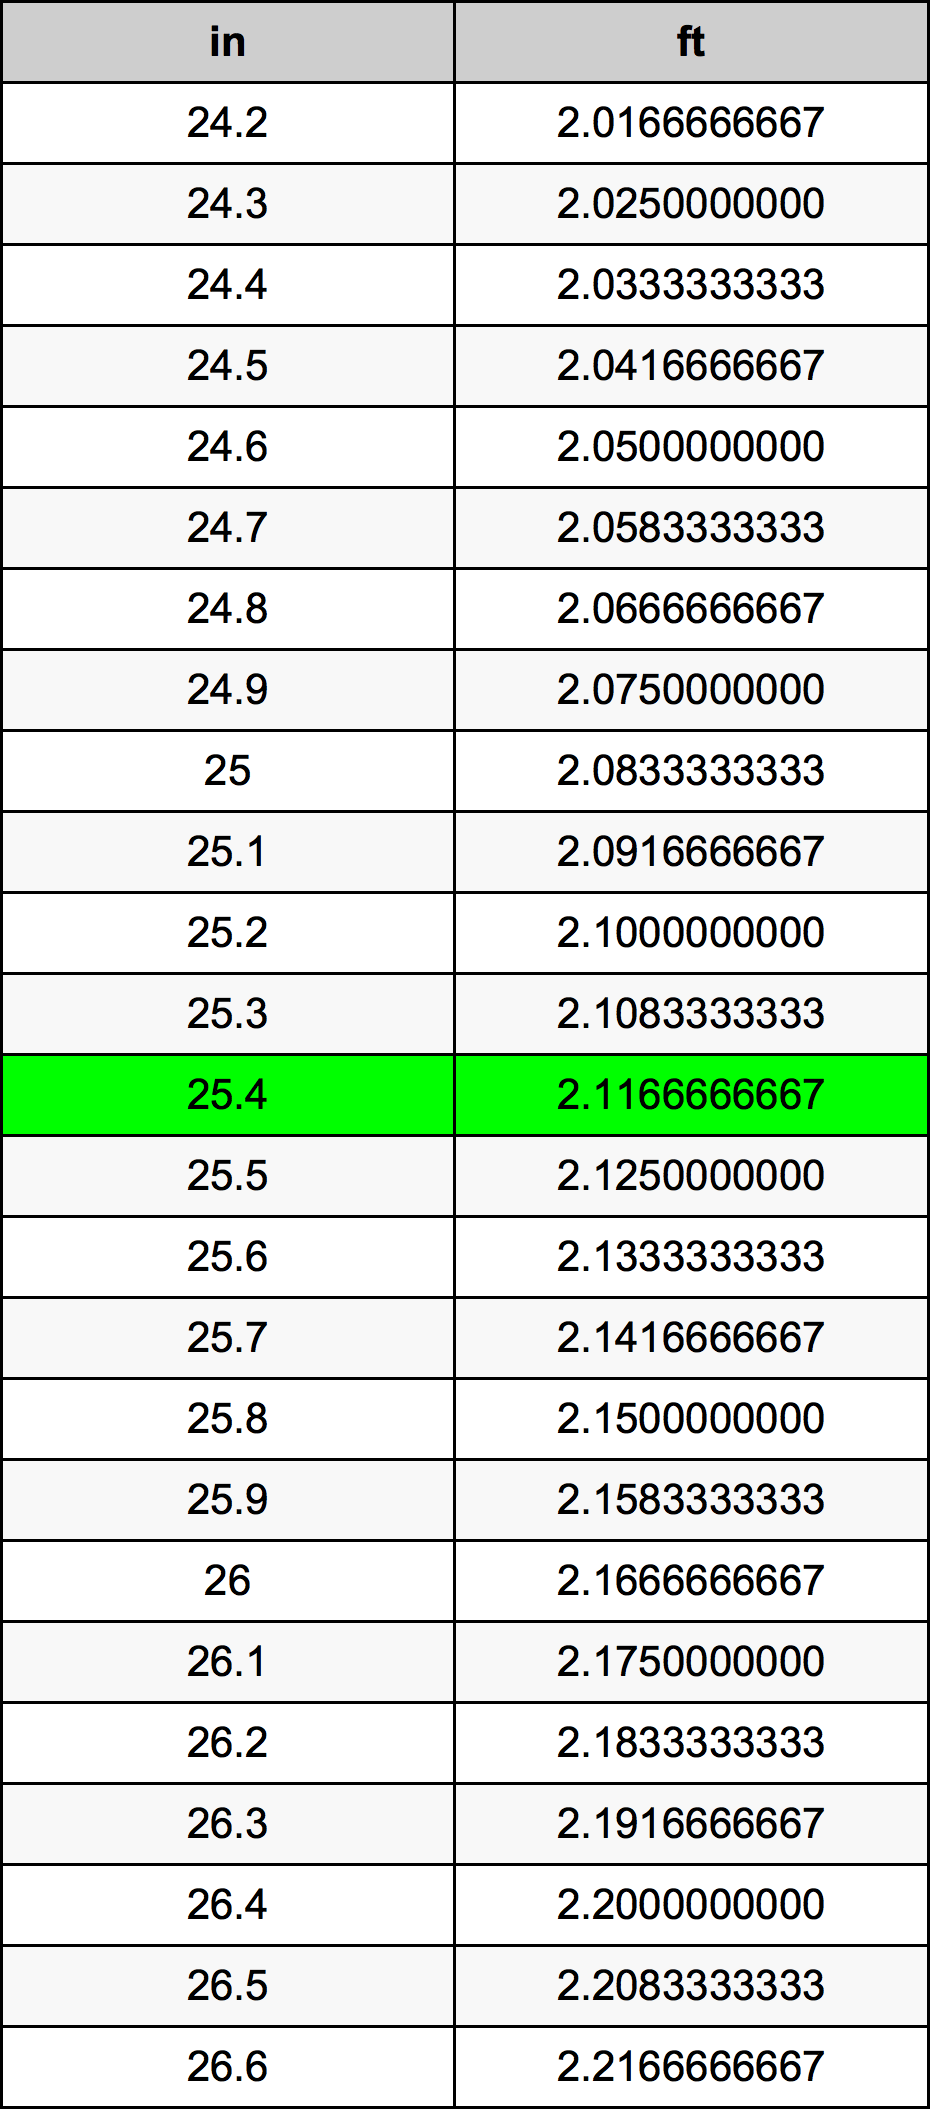 25.4 Pulzier konverżjoni tabella